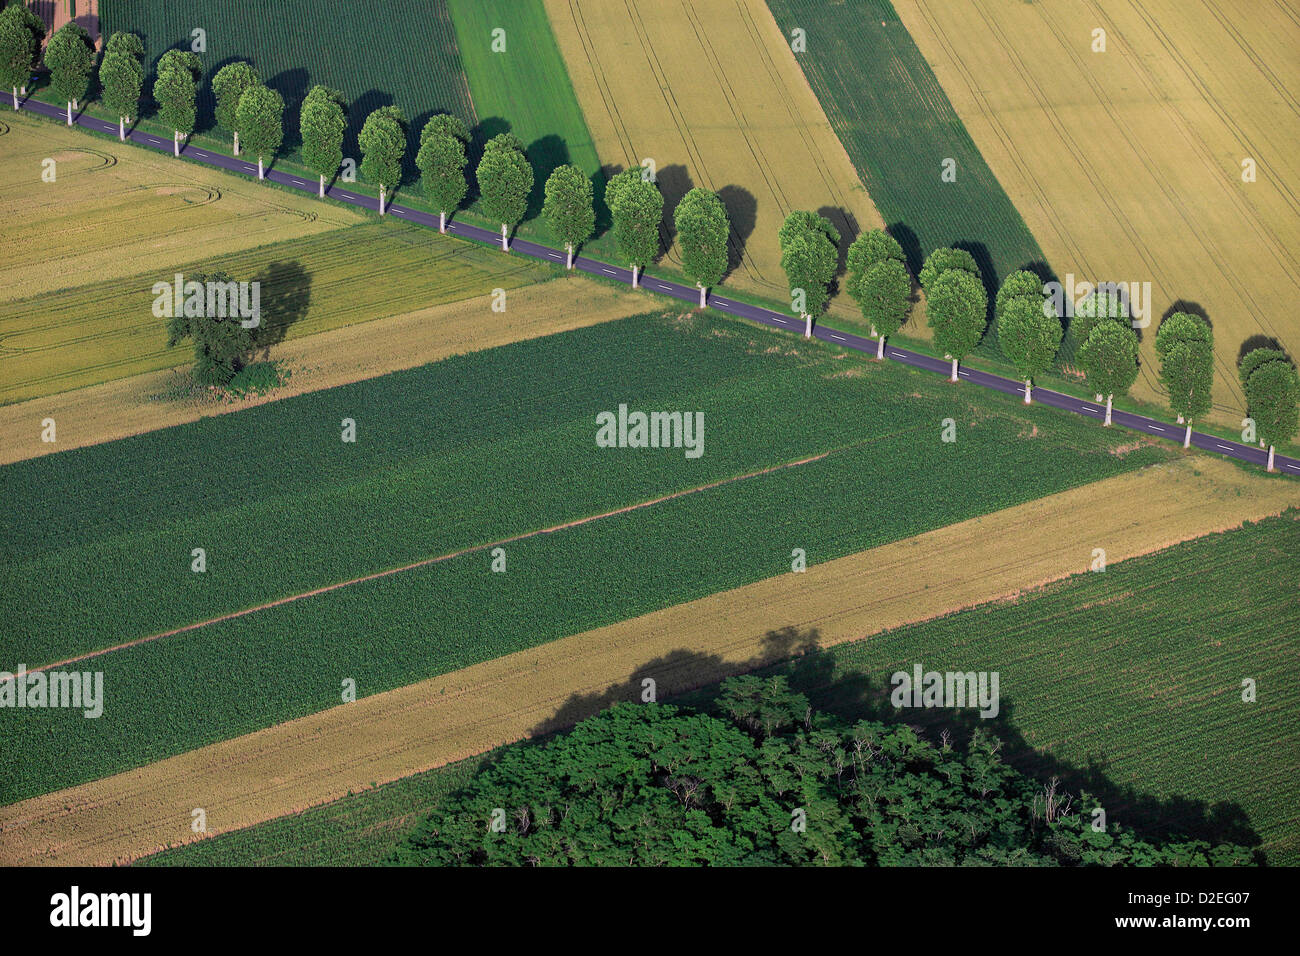 Francia, Marne (51), antena paisaje con árboles alineados en el borde de la carretera en los campos de cereal (foto aérea) Foto de stock